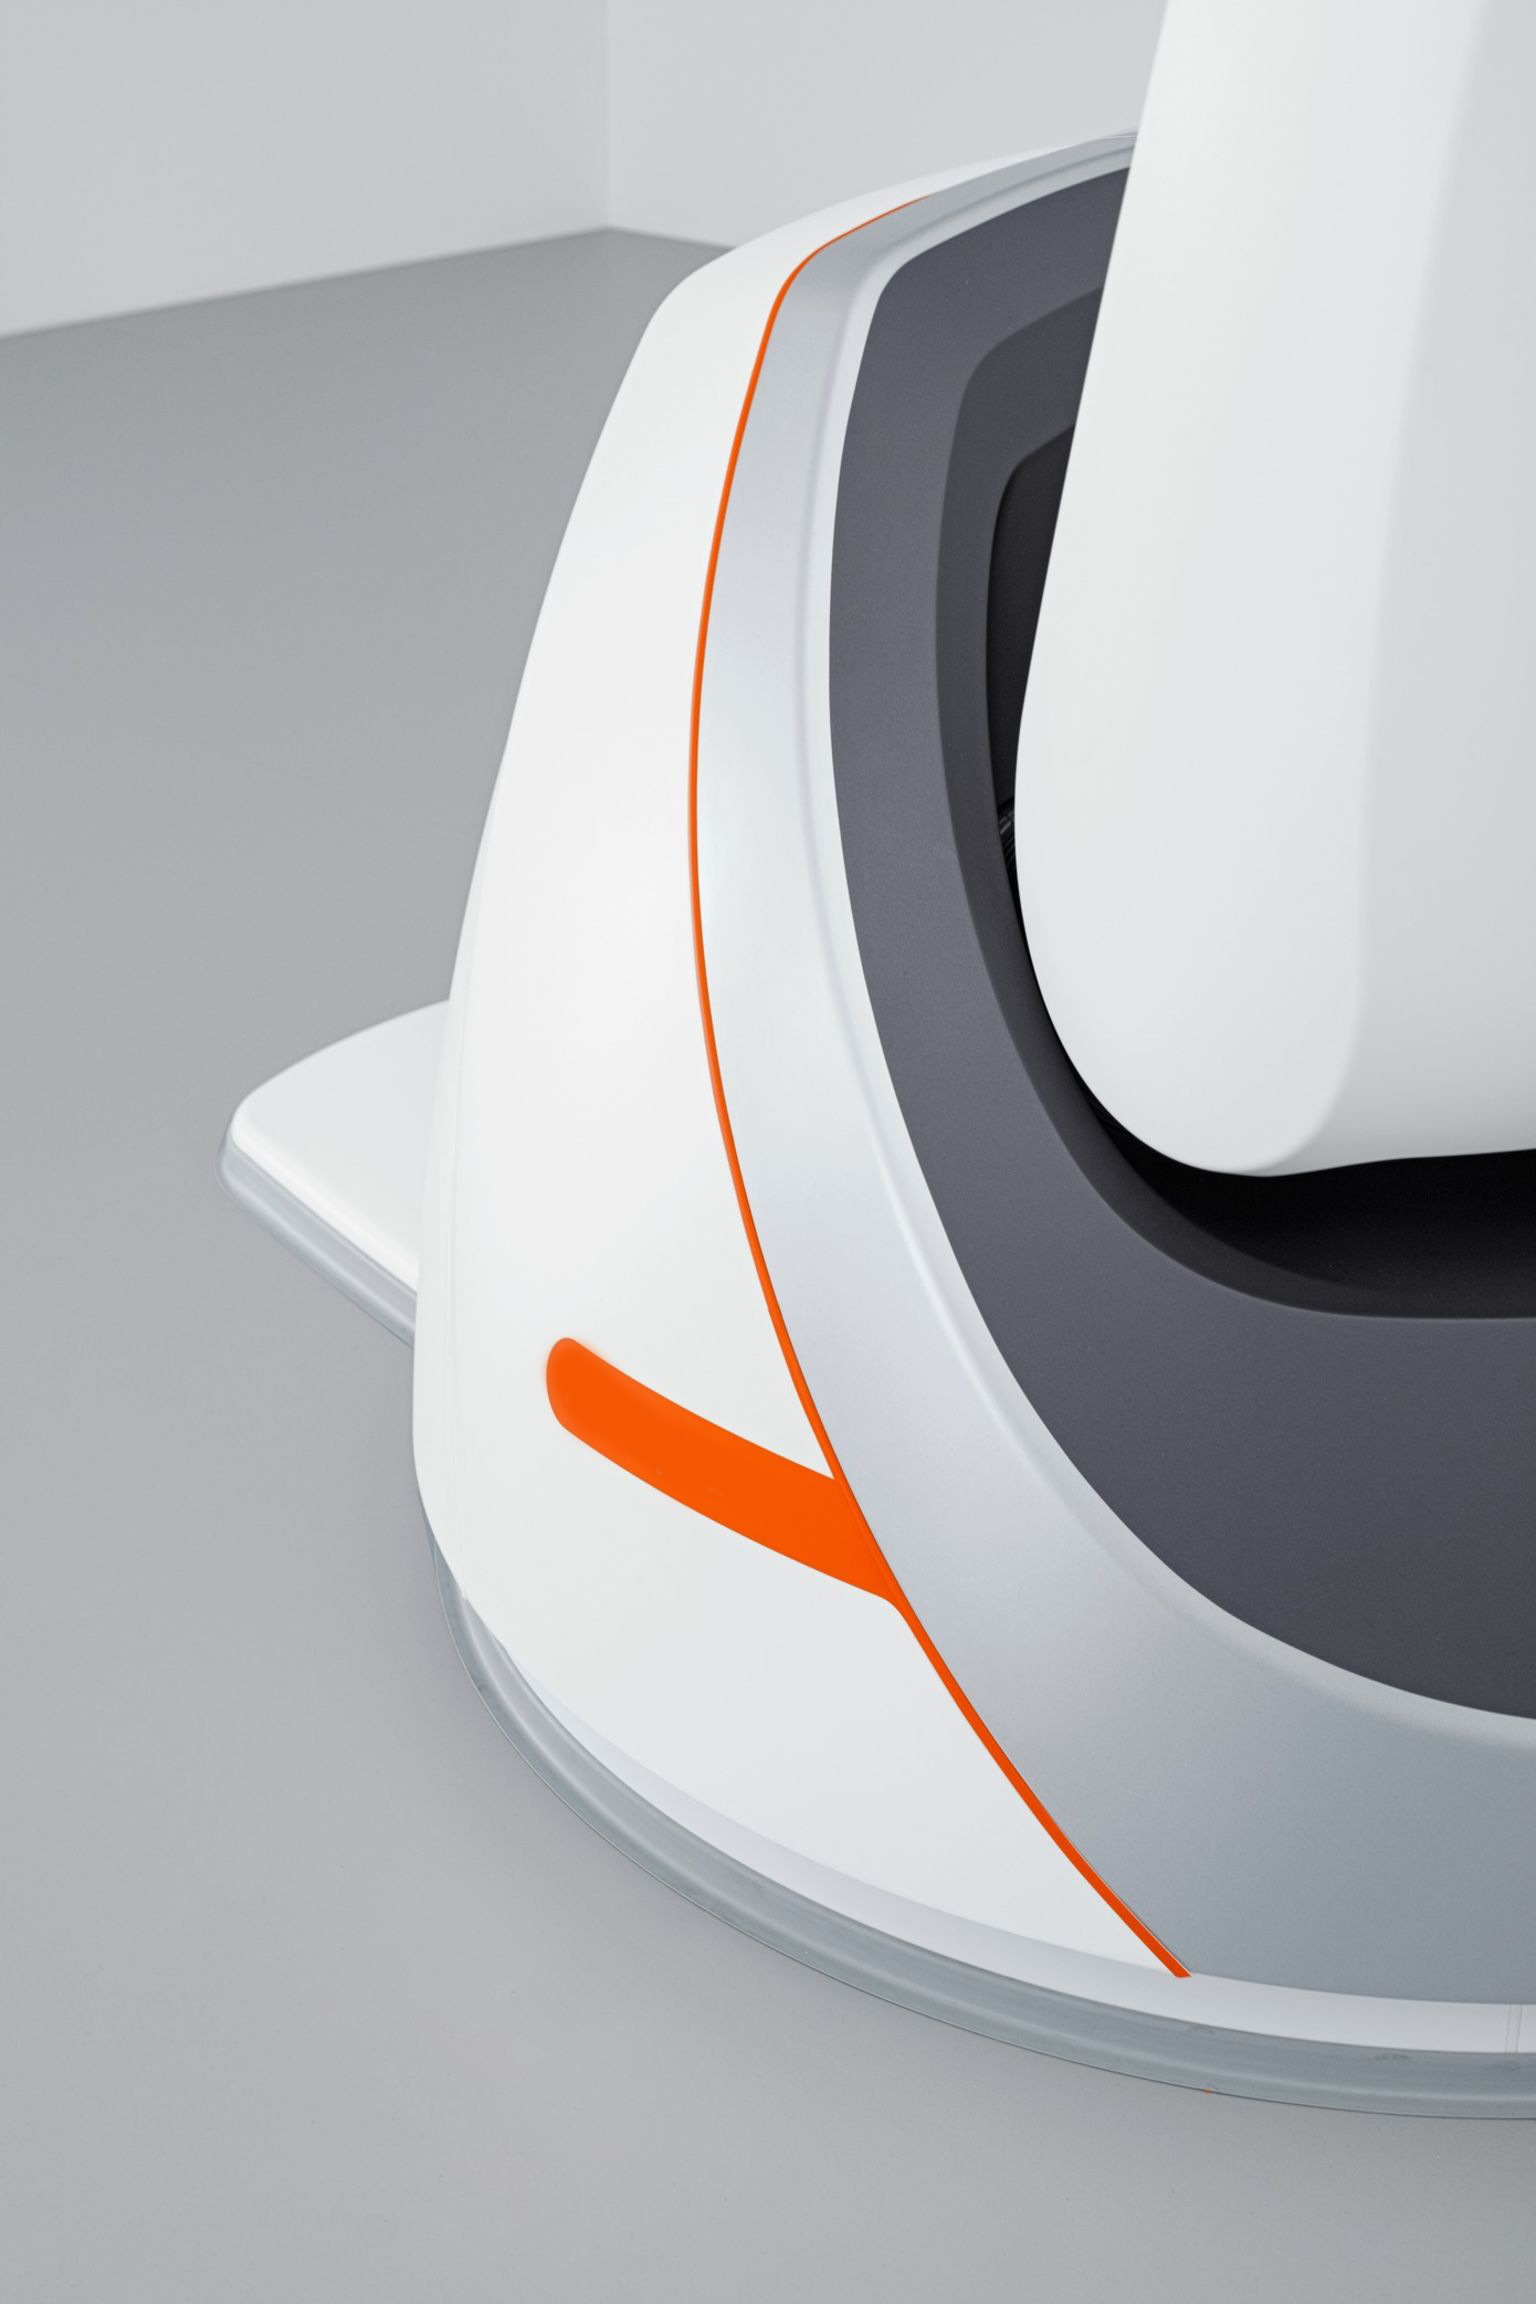 产品设计 外观设计 机器人X射线系统设计 欧佩斯科技设计公司 结构设计1